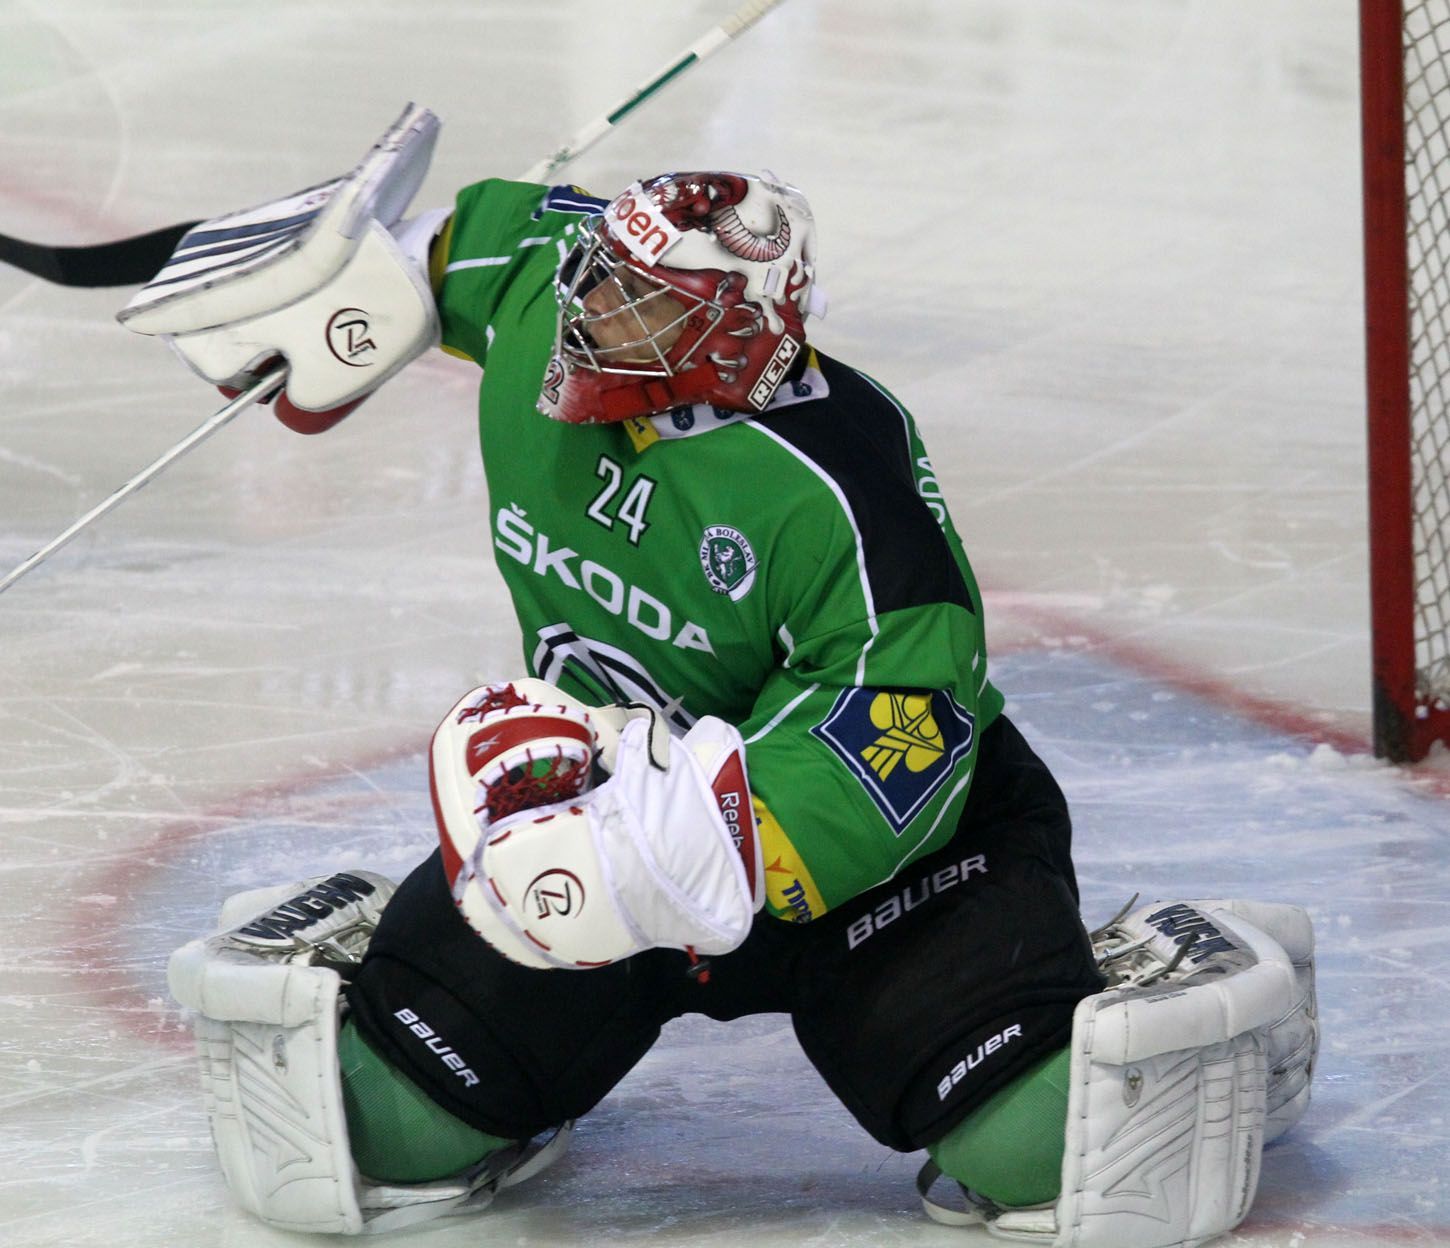 Mladoboleslavský hokejový brankář Vlastimil Lakosil se snaží vykrýt jednu ze střel Kladna v přípravném utkání před sezónou 2012/13.